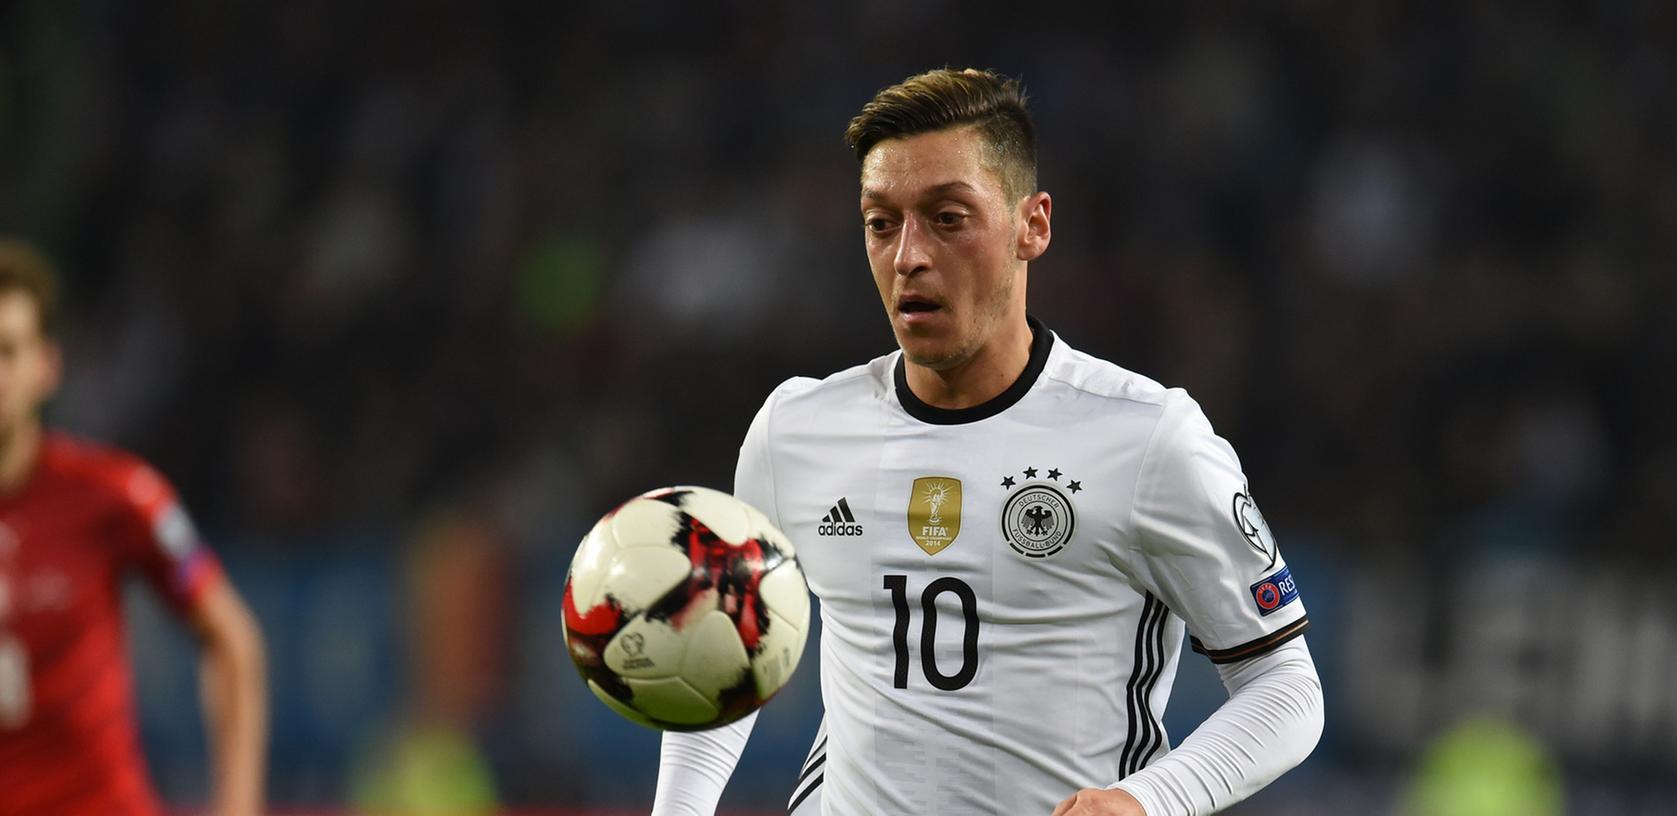 Mesut Özil ist nur ein Fußball-Star, dessen Geldgeschäfte der Spiegel unter die Lupe genommen hat.